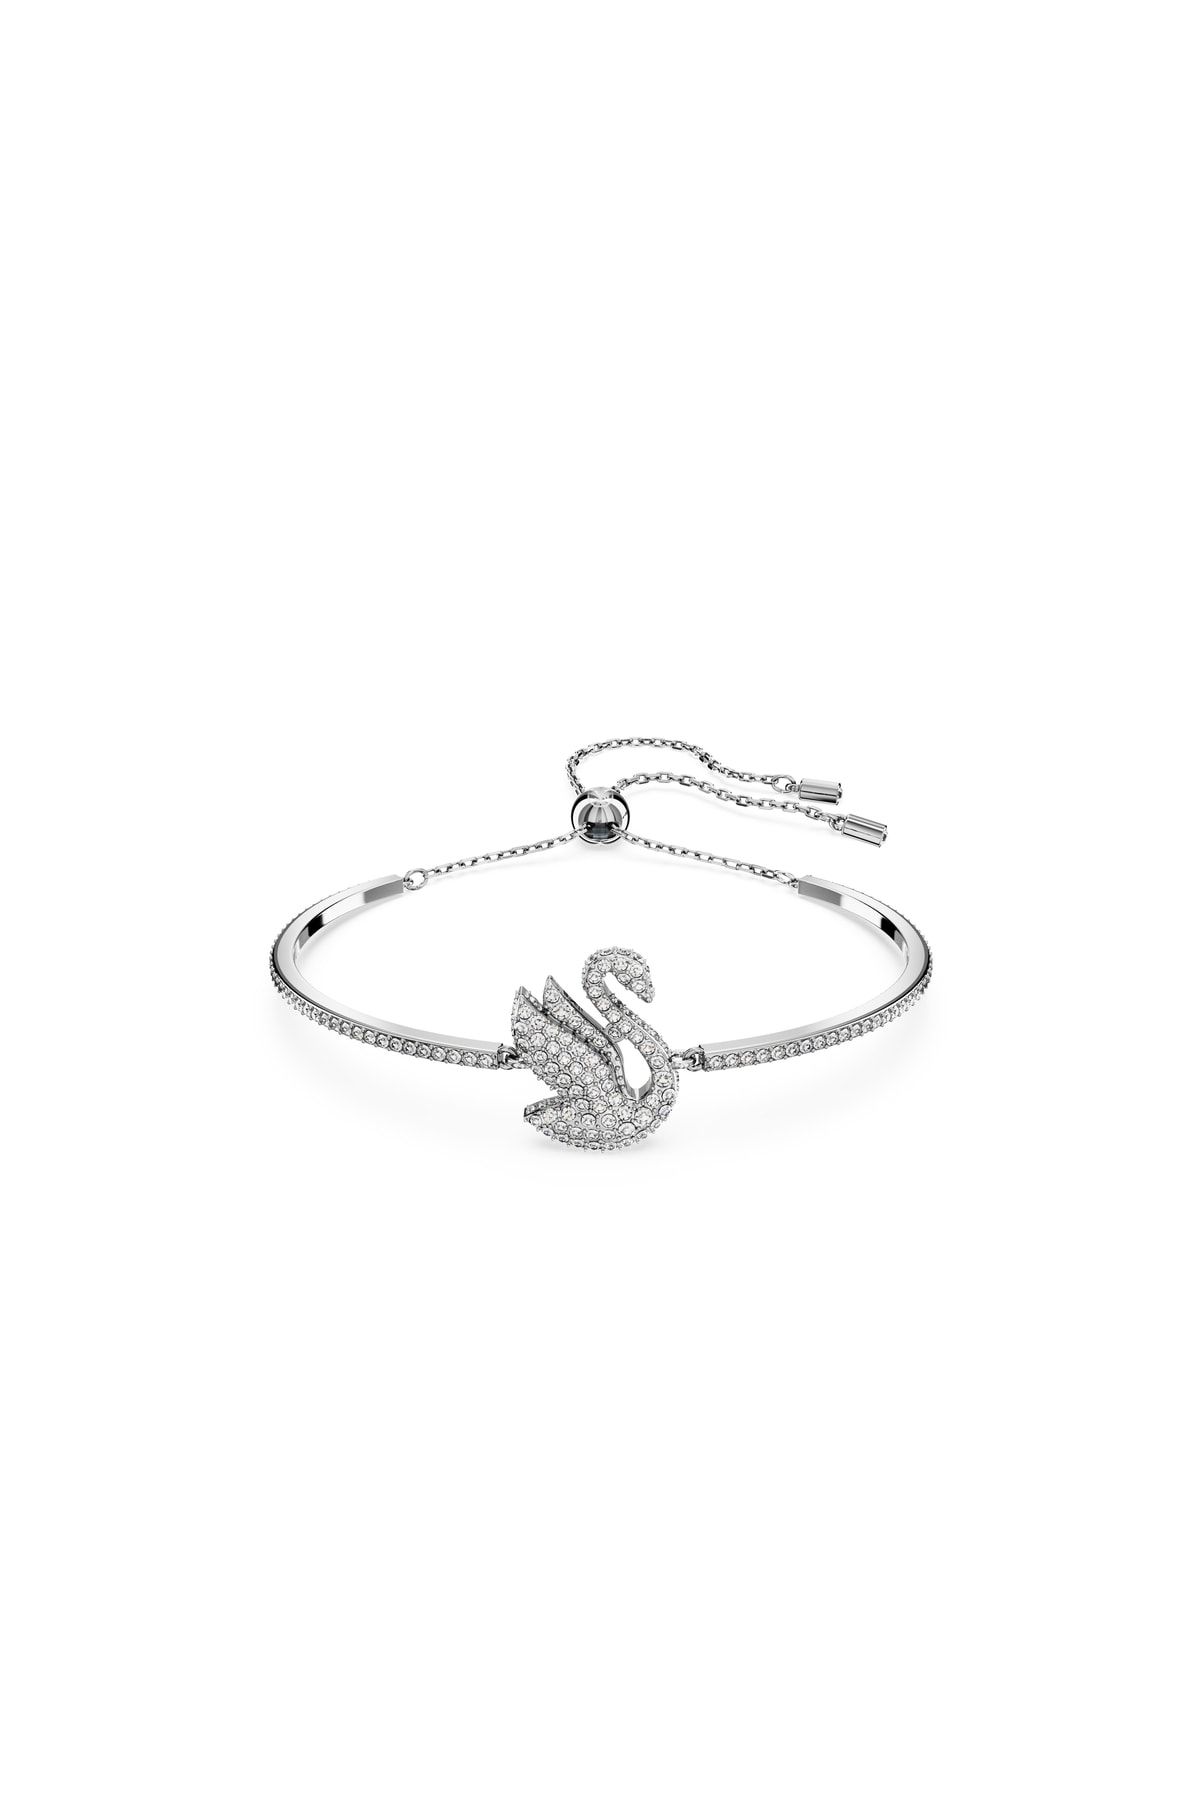 Swarovski 5649772 Bilezik Iconic Swan:soft Bracelet Xs Cry/rhs S